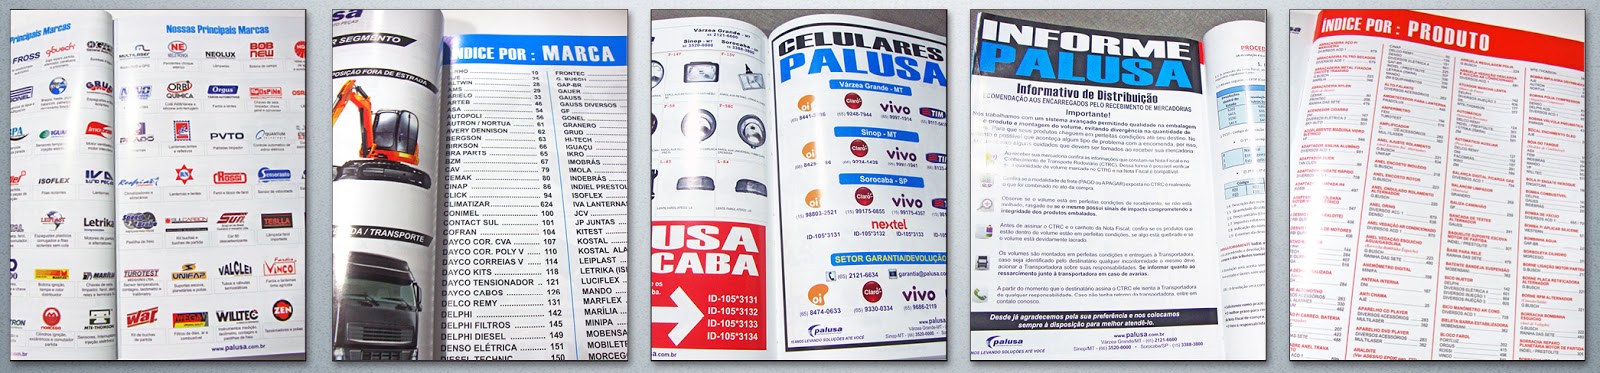 Chegou o catálogo Palusa 2014